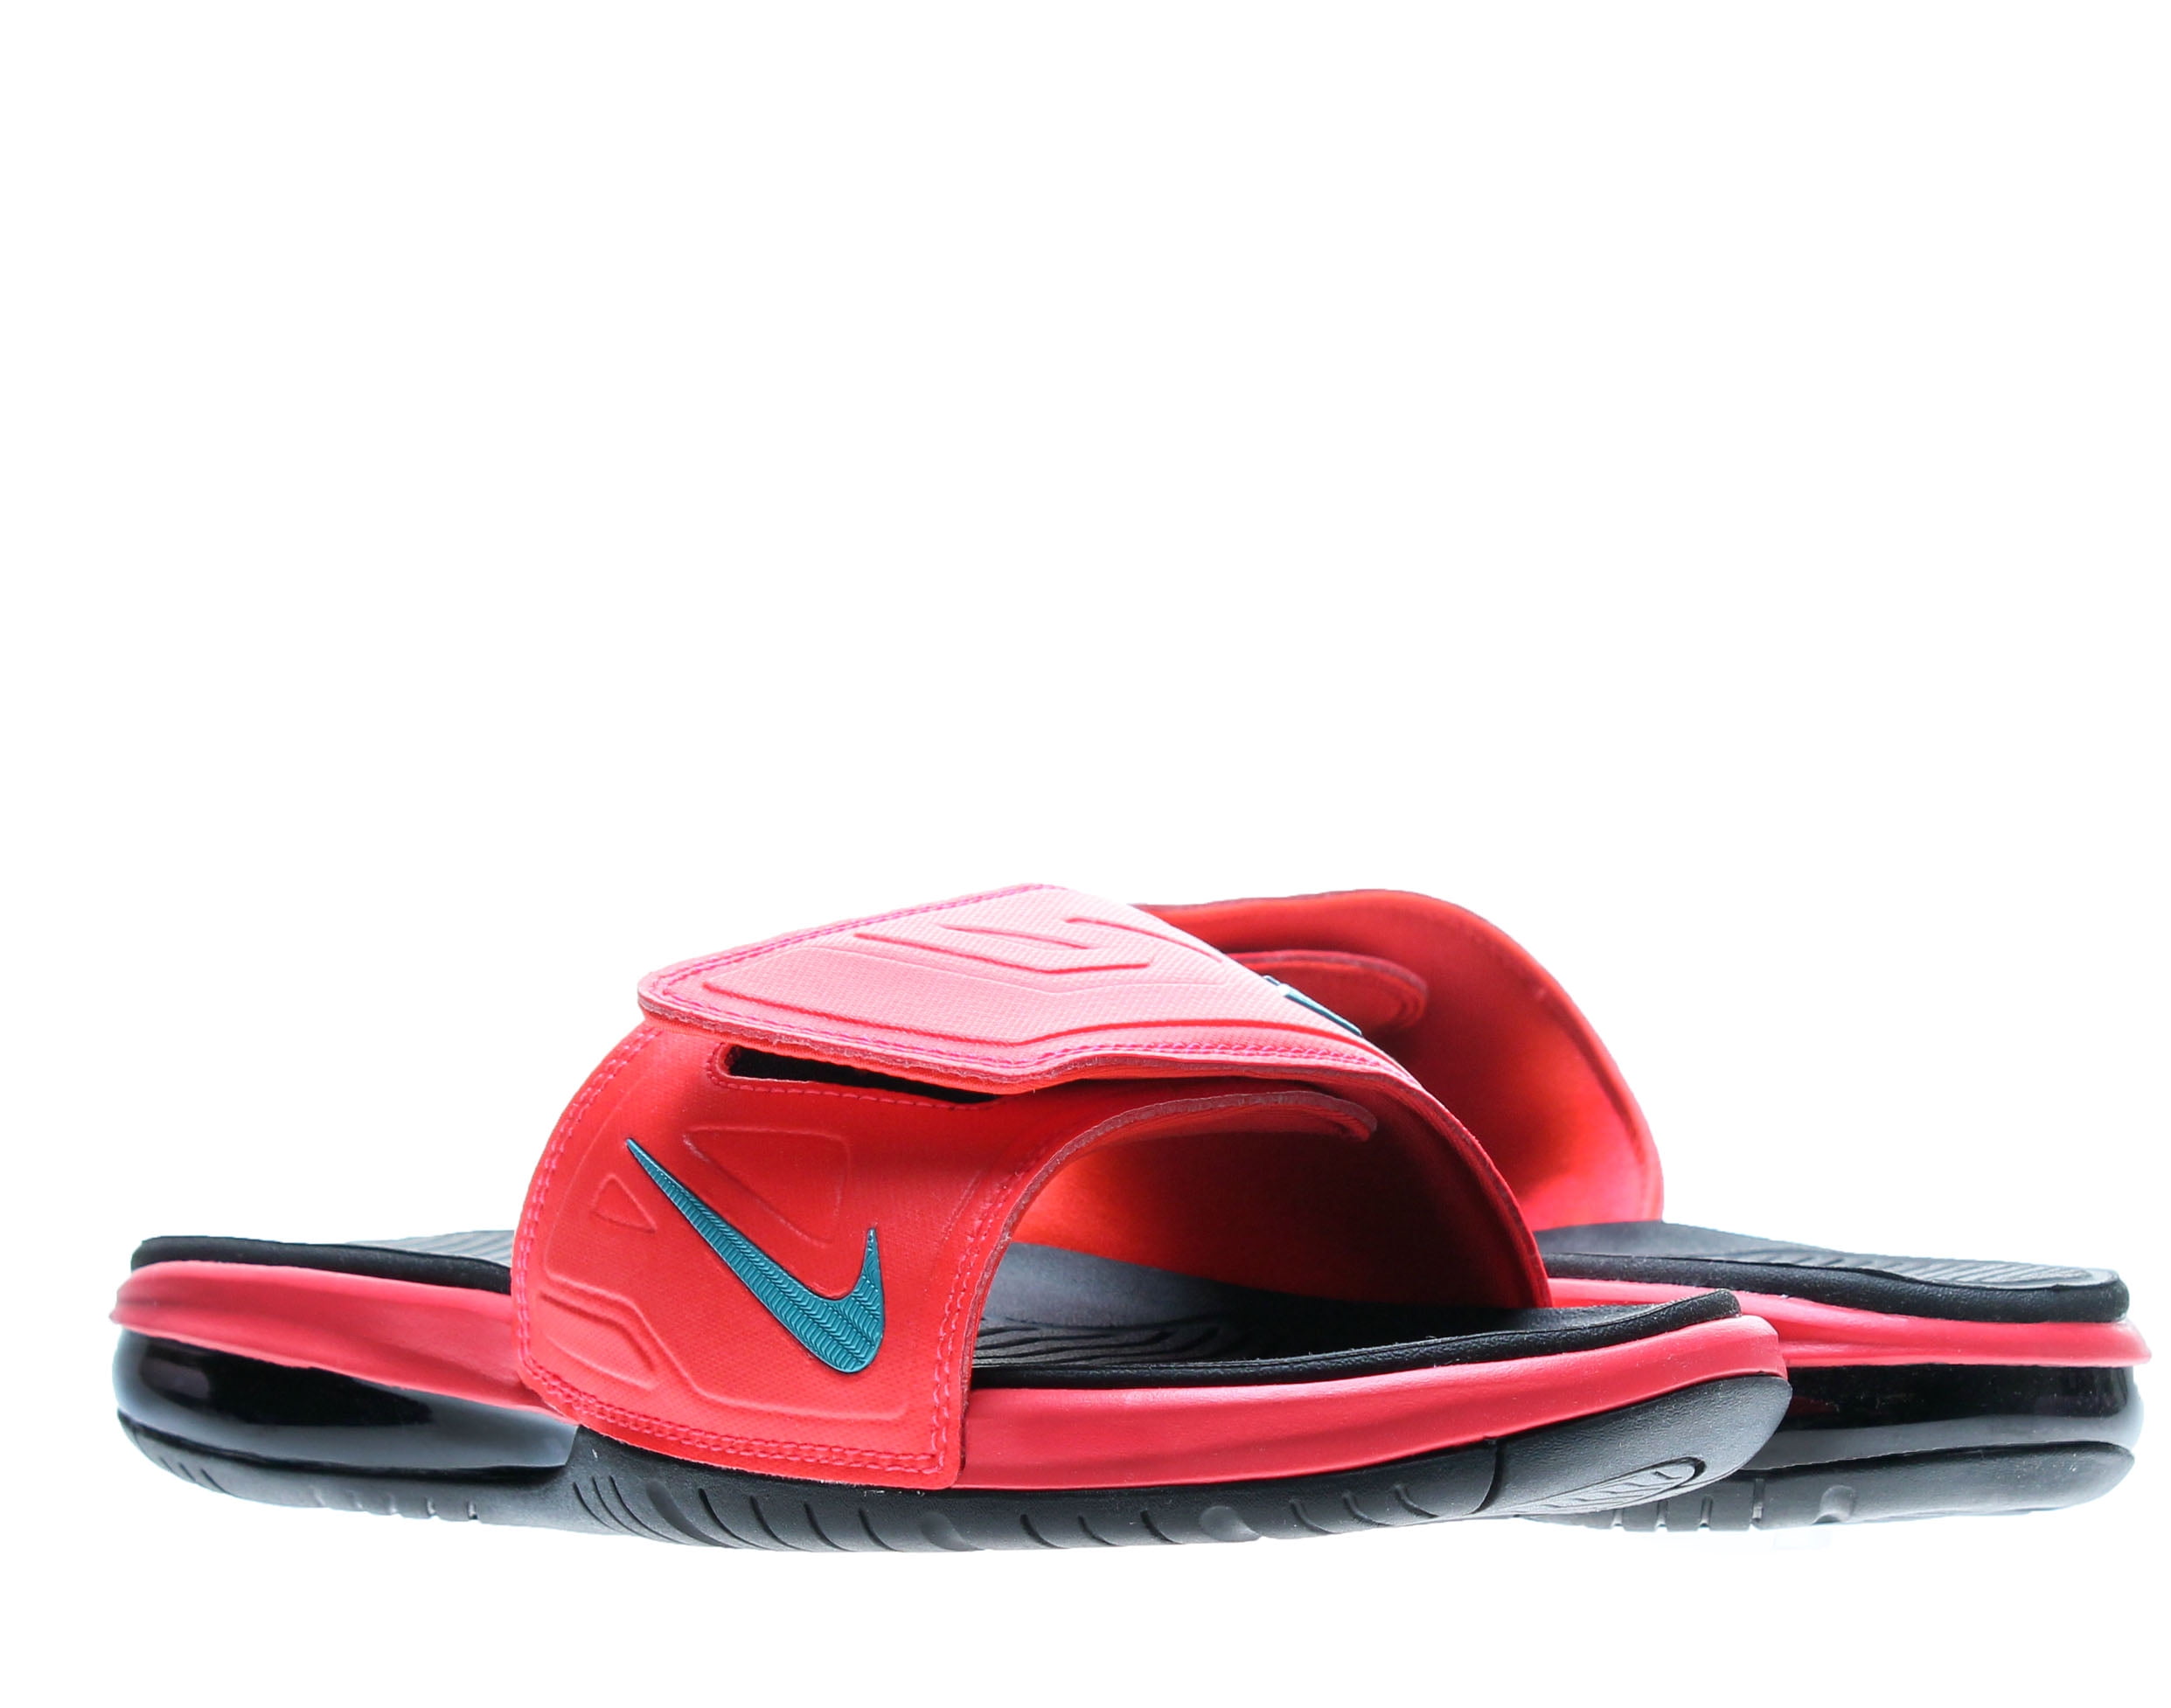 Ugyldigt Bolt låne Nike Air Lebron 3 Slide Elite Men's Flip Flops Size 9 - Walmart.com